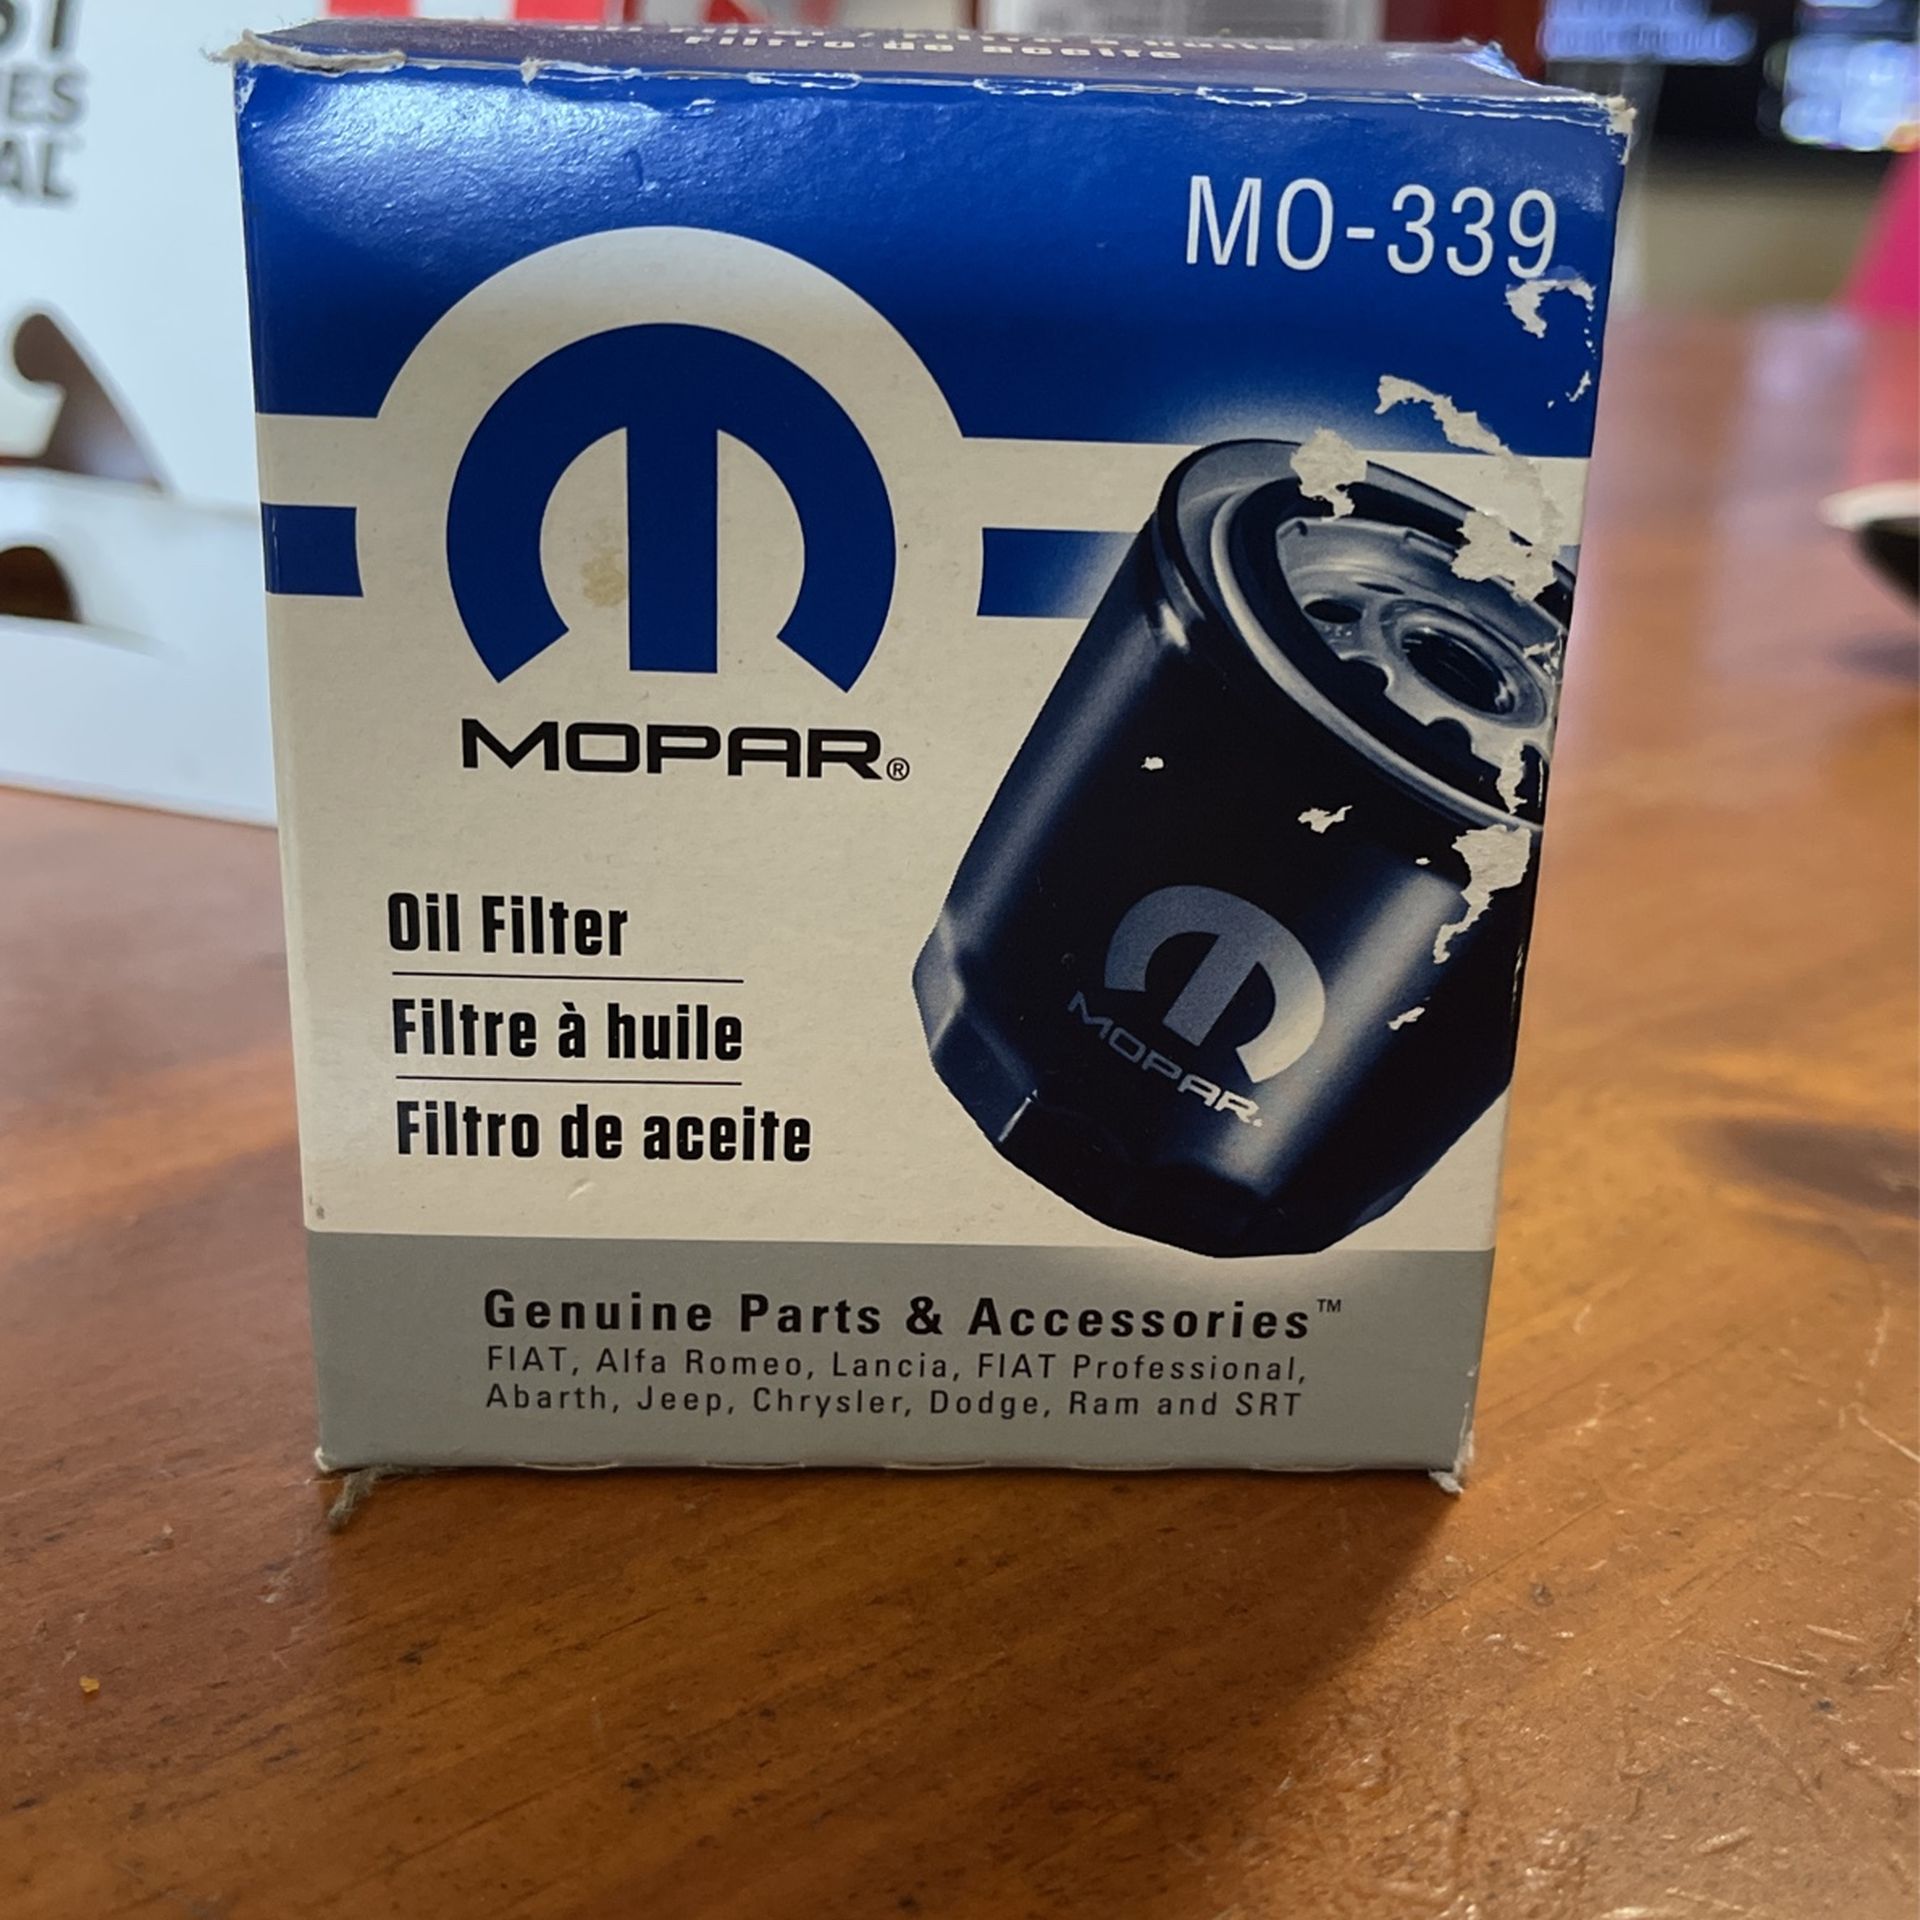 Mopar Oil Filter M0-339